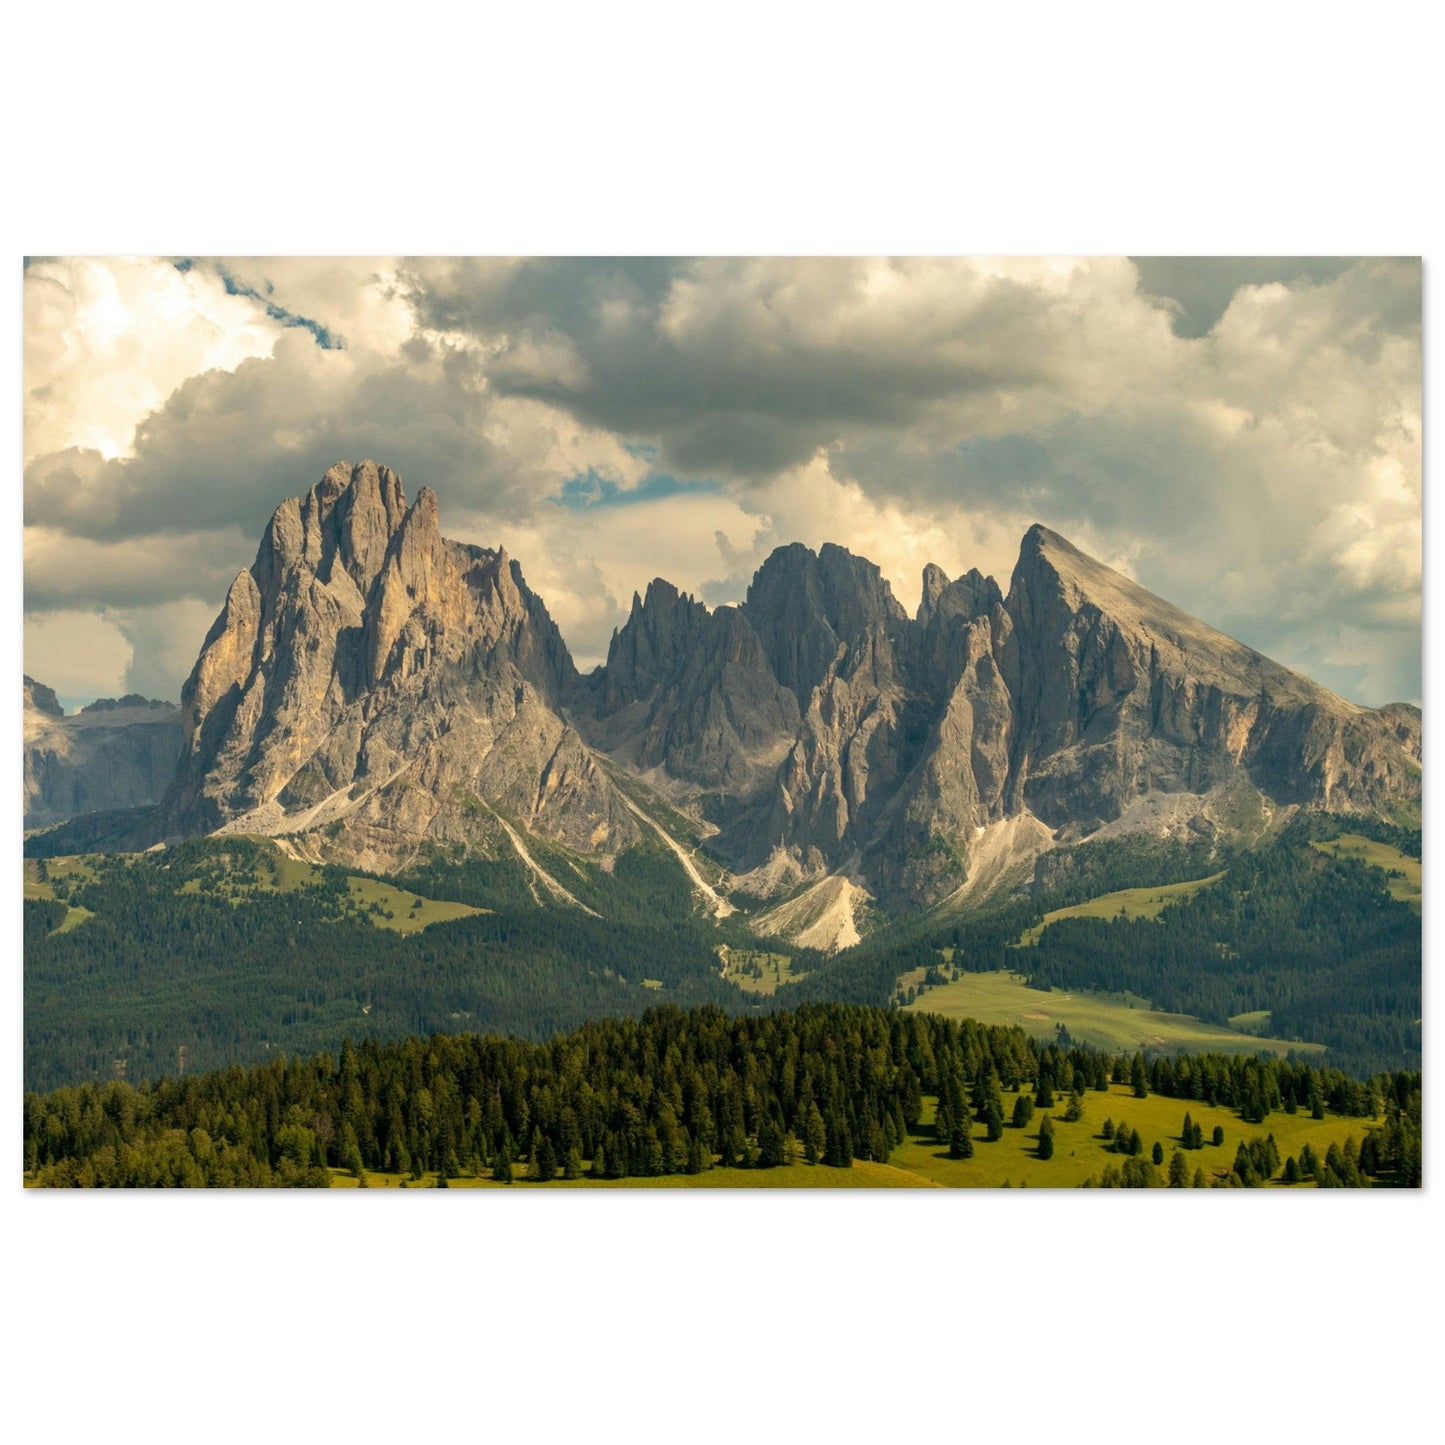 Vente Photo du Sassolungo, Dolomites, Italie - Tableau photo paysage